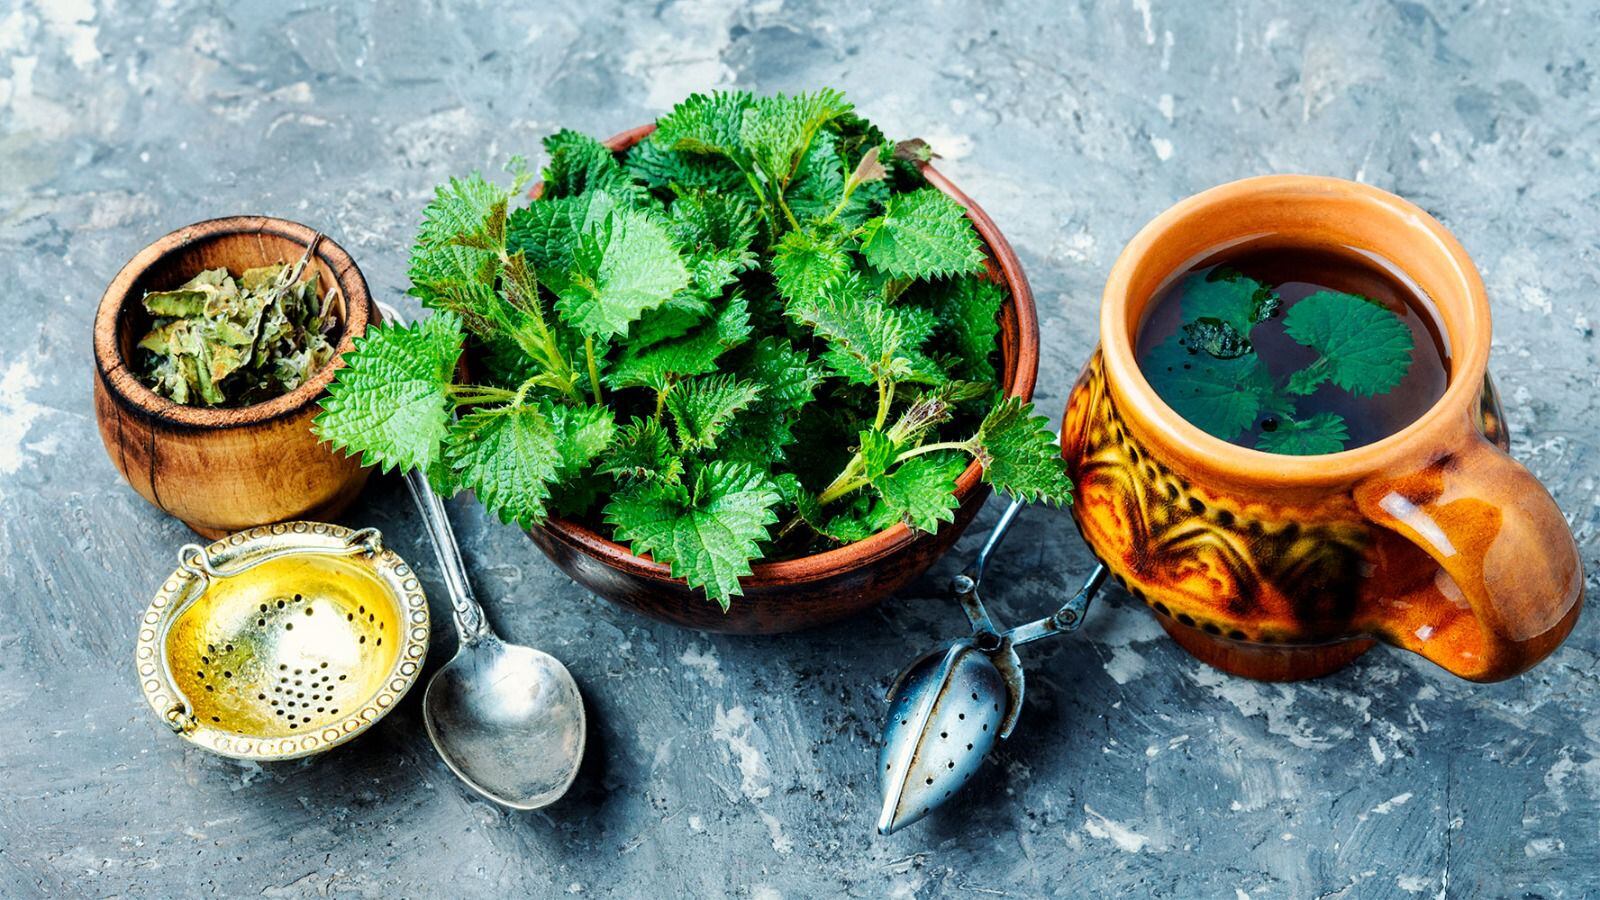 El té de ortiga se consume para padecimientos renales y estomacales. (Foto: Shutterstock).